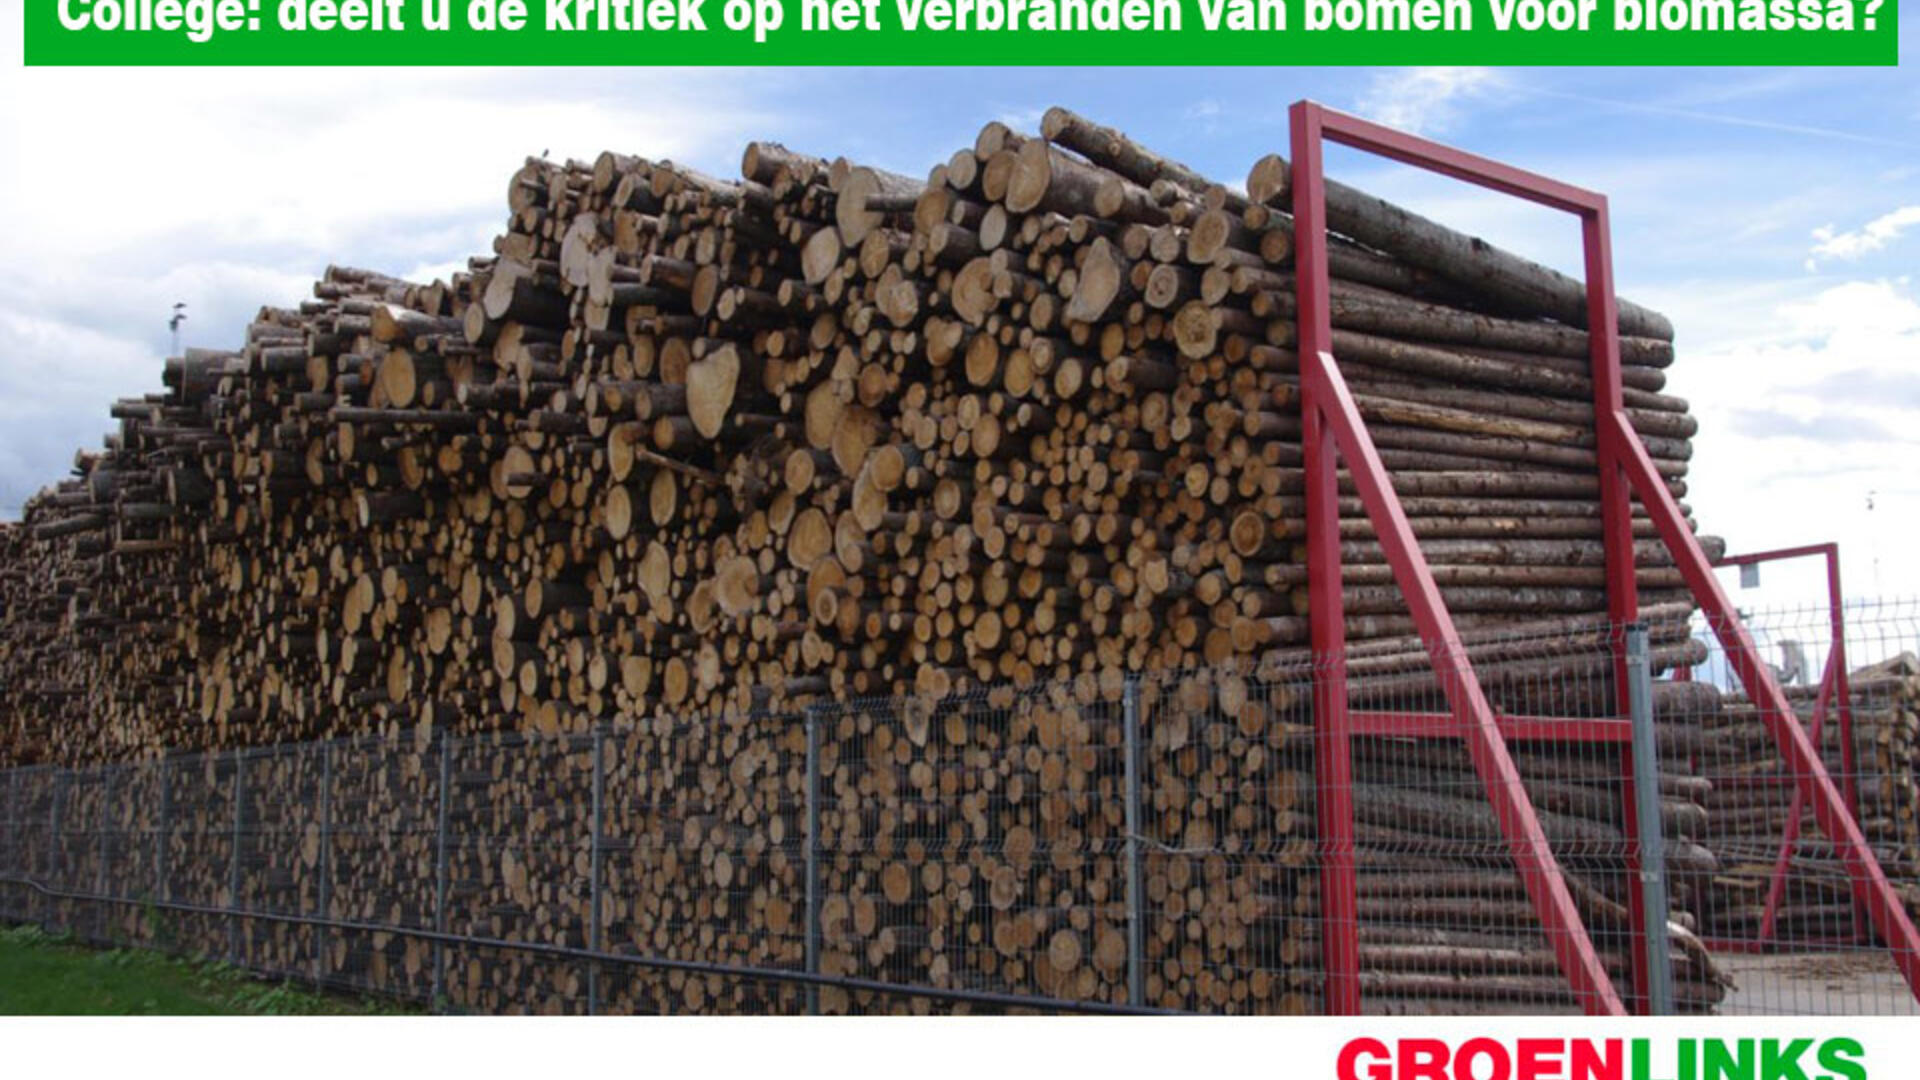 GroenLinks vraagt: College, deelt u de kritiek op het verbranden van bomen voor biomassa? - 11 maart 2020